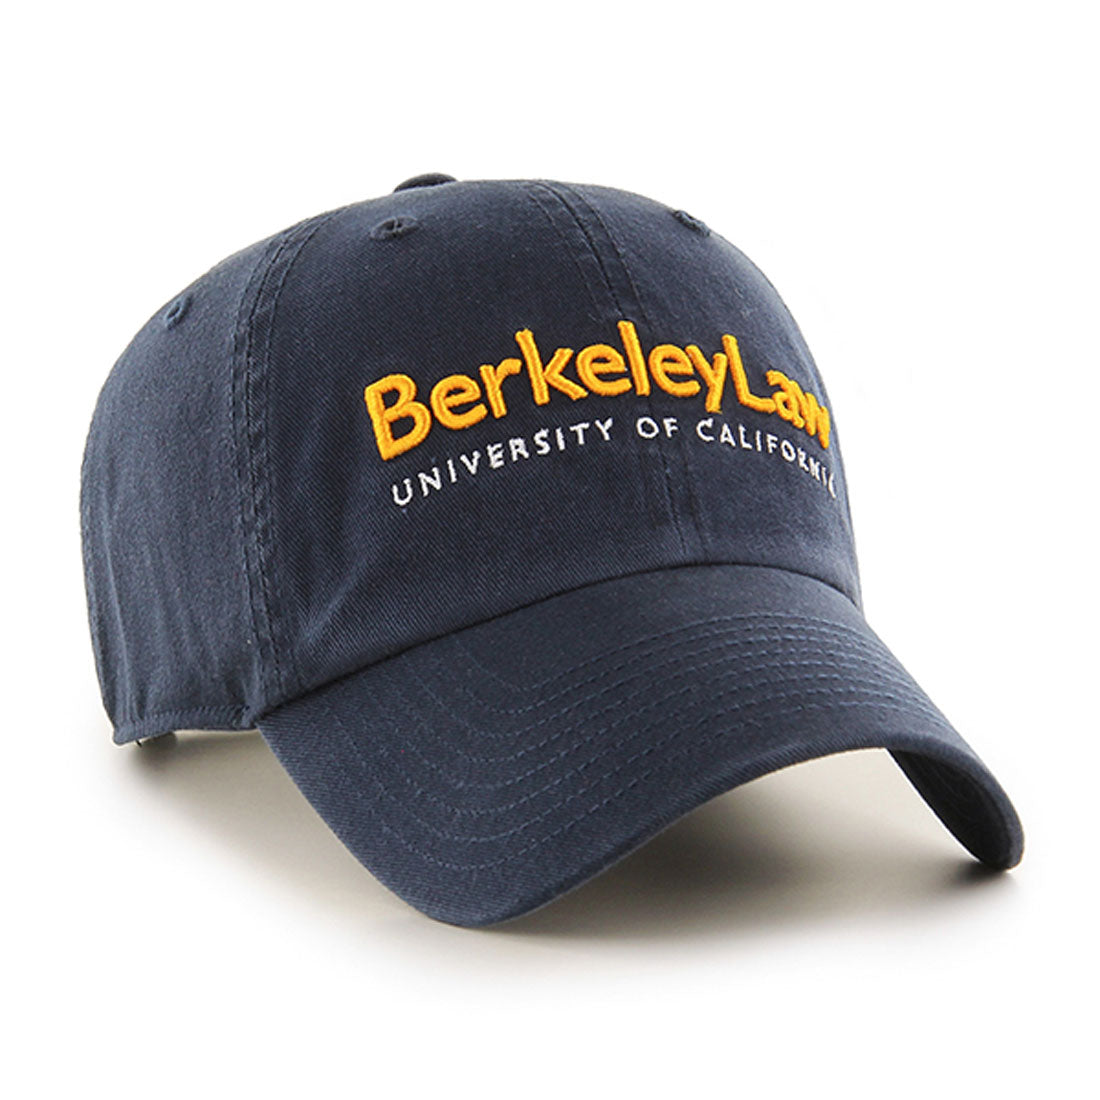 University Of California Berkeley Law adjustable hat-Navy-Shop College Wear